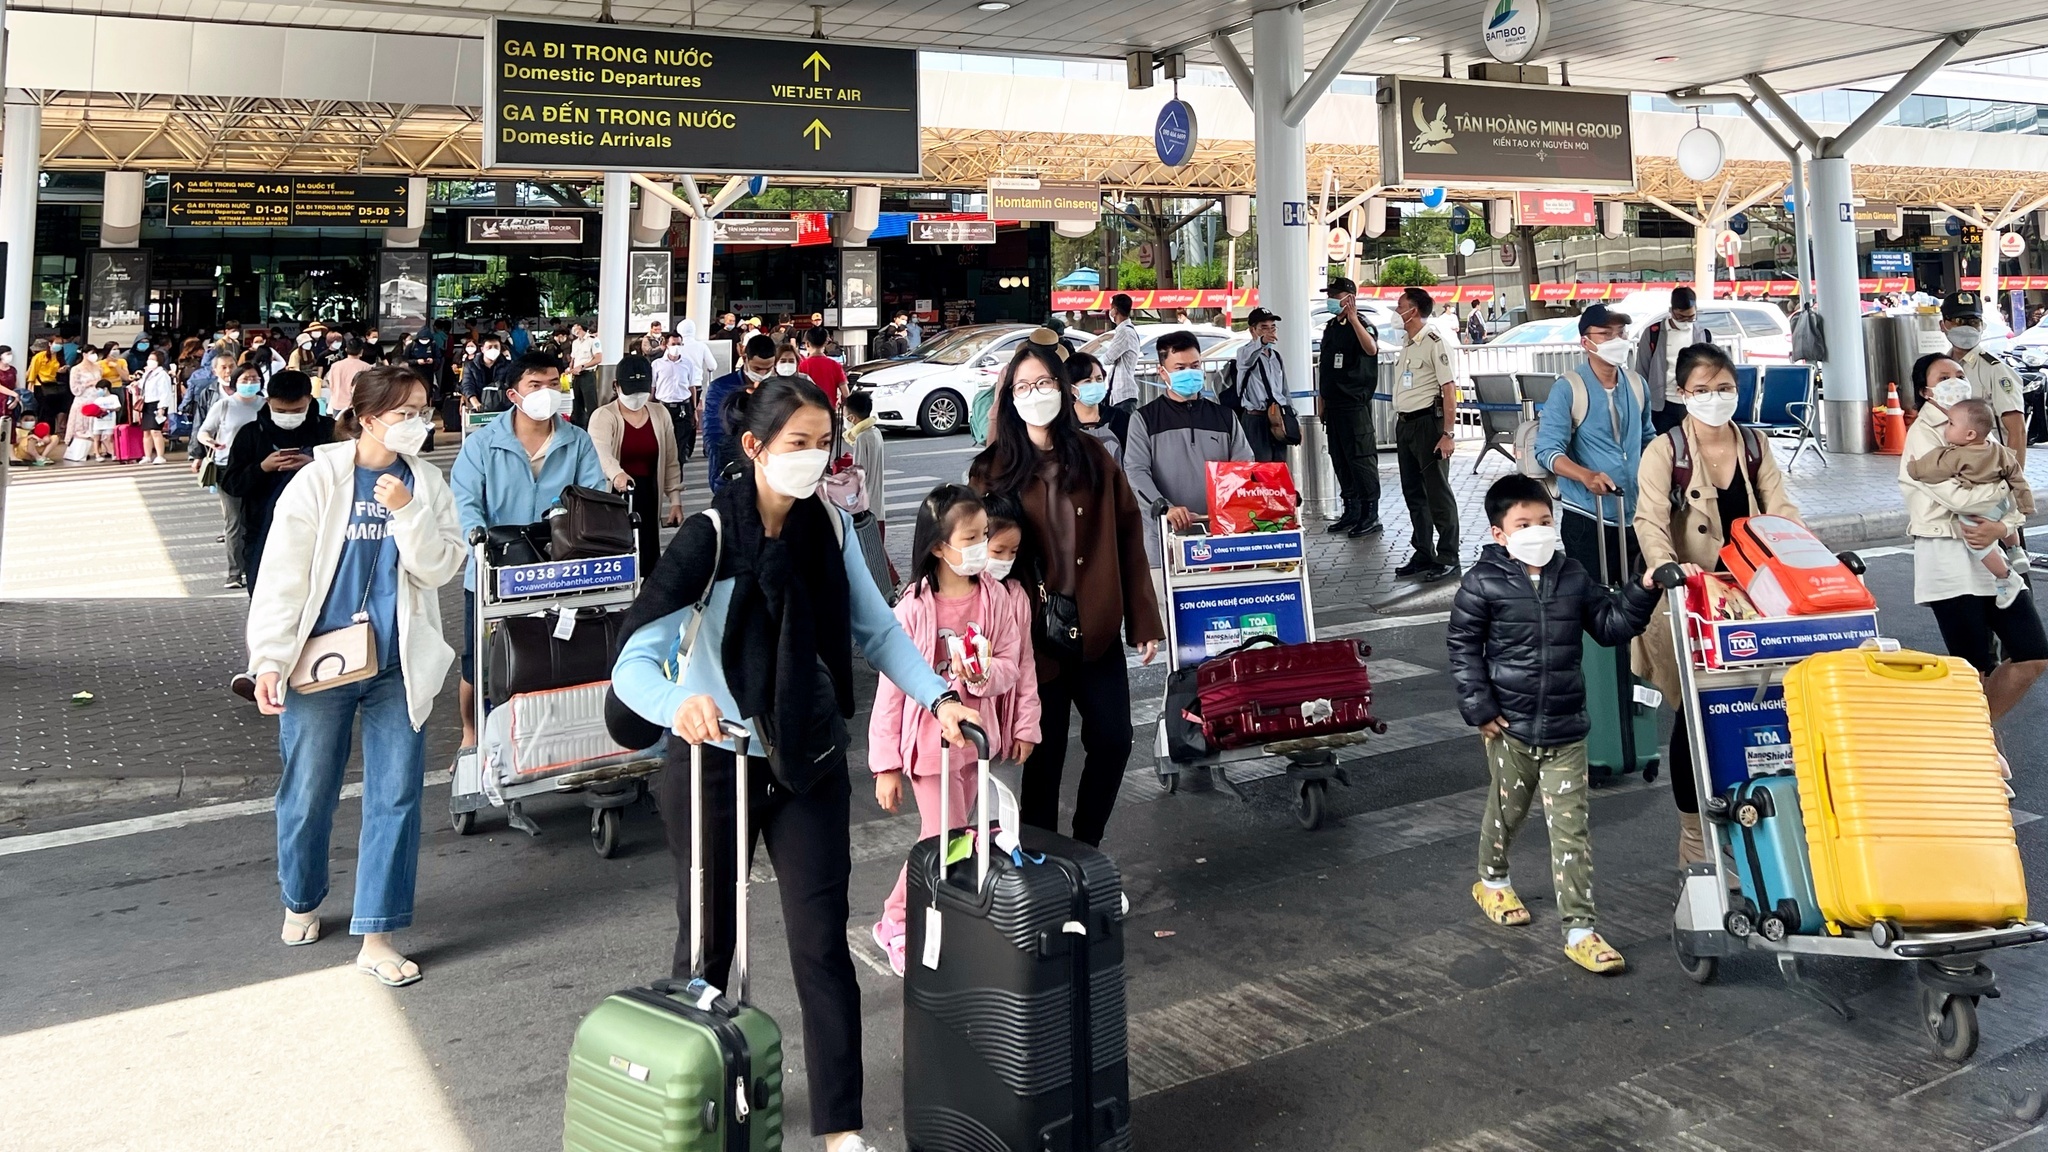 Hôm nay, sân bay Tân Sơn Nhất đón khách kỷ lục sau tết - ảnh 1